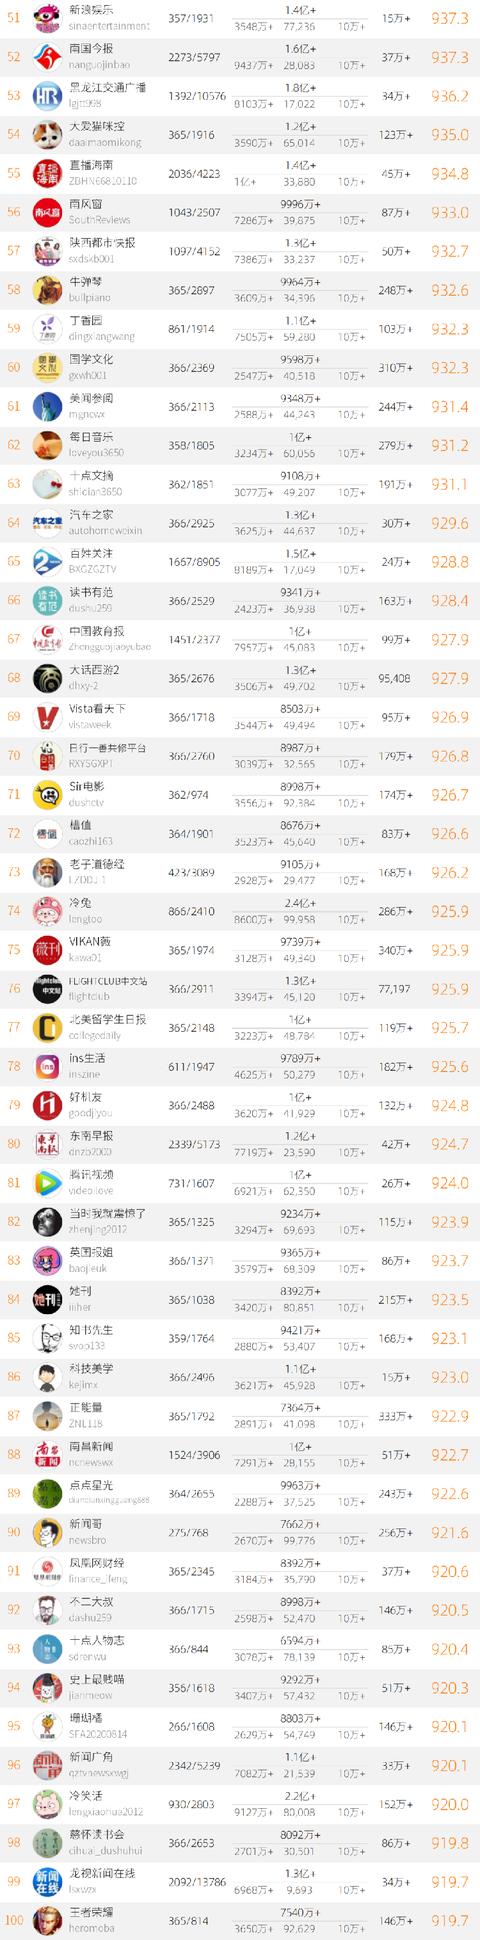 2020年中国微信500强榜单公布 大众网淄博位列全国154名-2.jpg